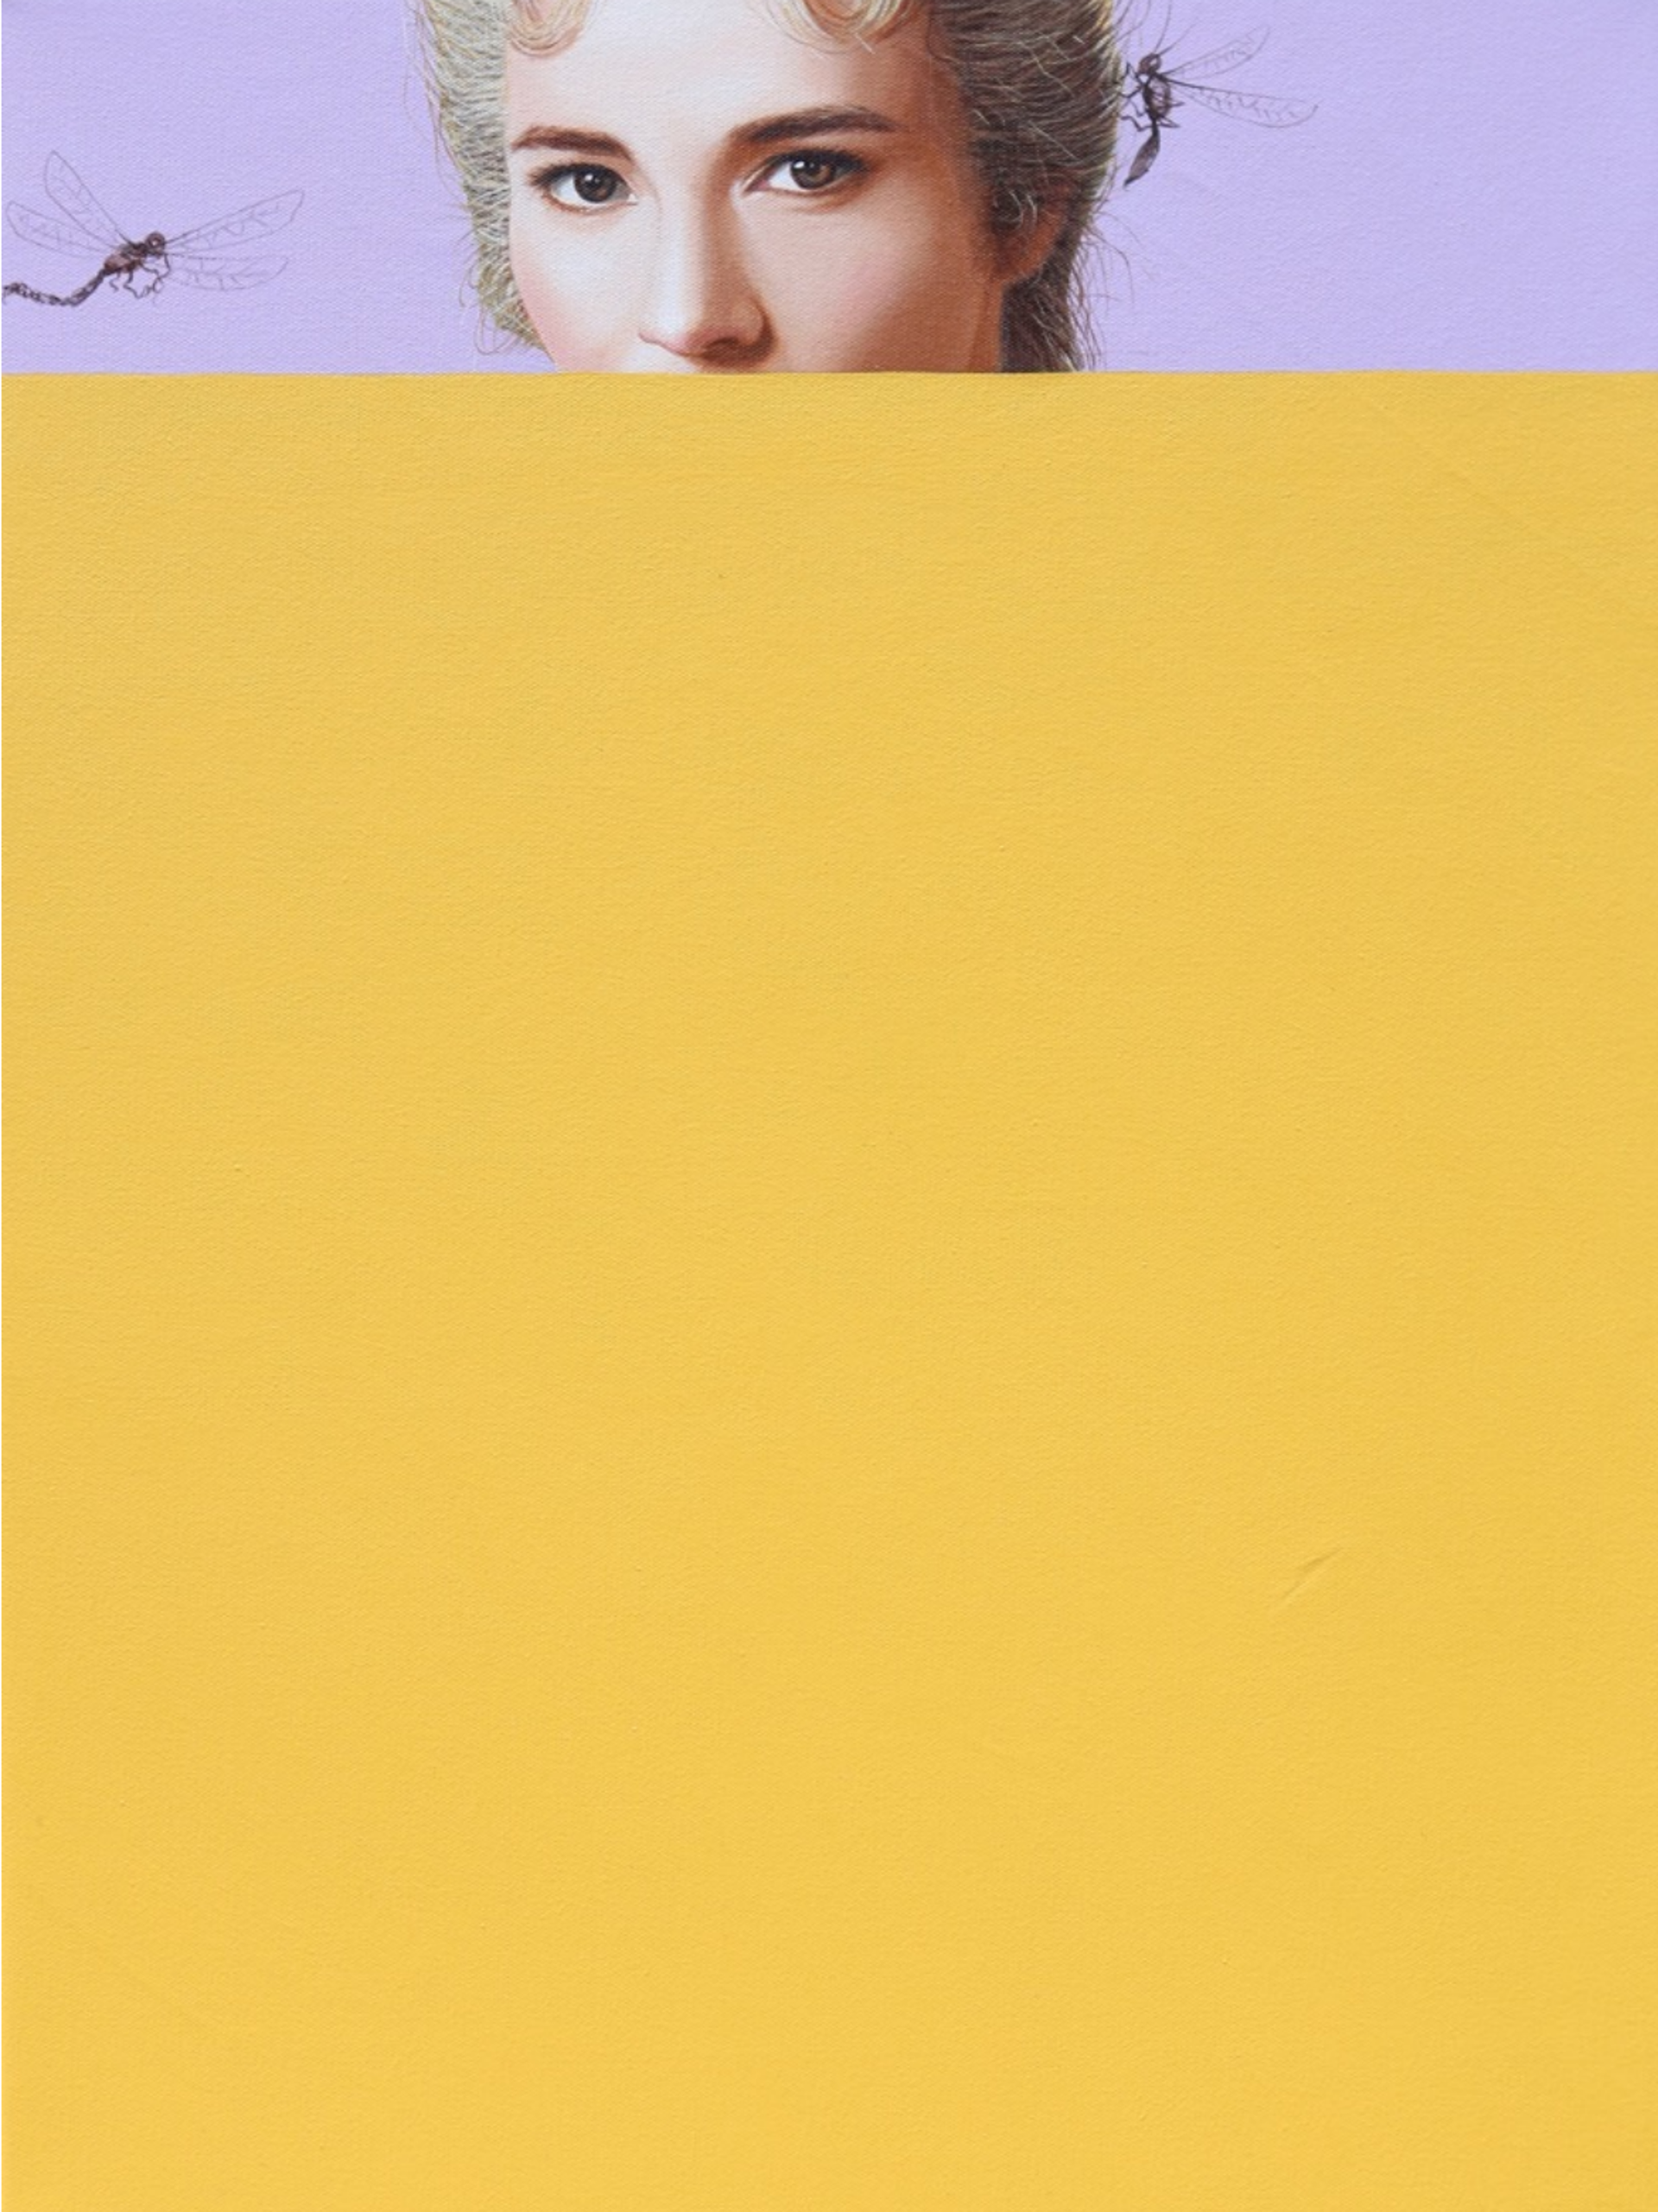 The Yellow Wallpaper by Carlos Gamez de Francisco